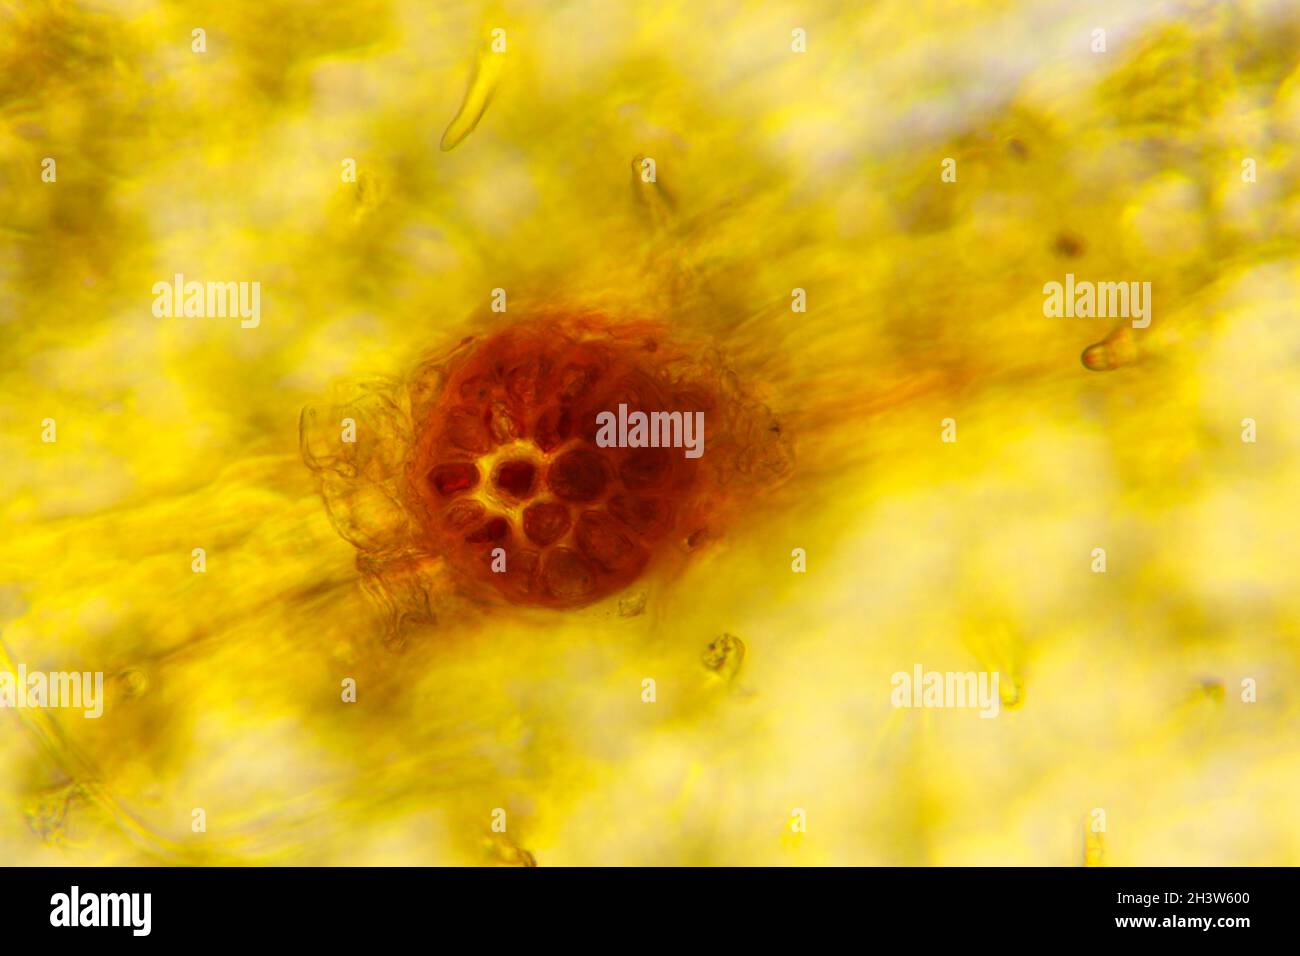 Vue microscopique du zèle commun (Corylus avellana) lenticel (vue de dessus).Lumière transmise.Éclairage à fond clair. Banque D'Images